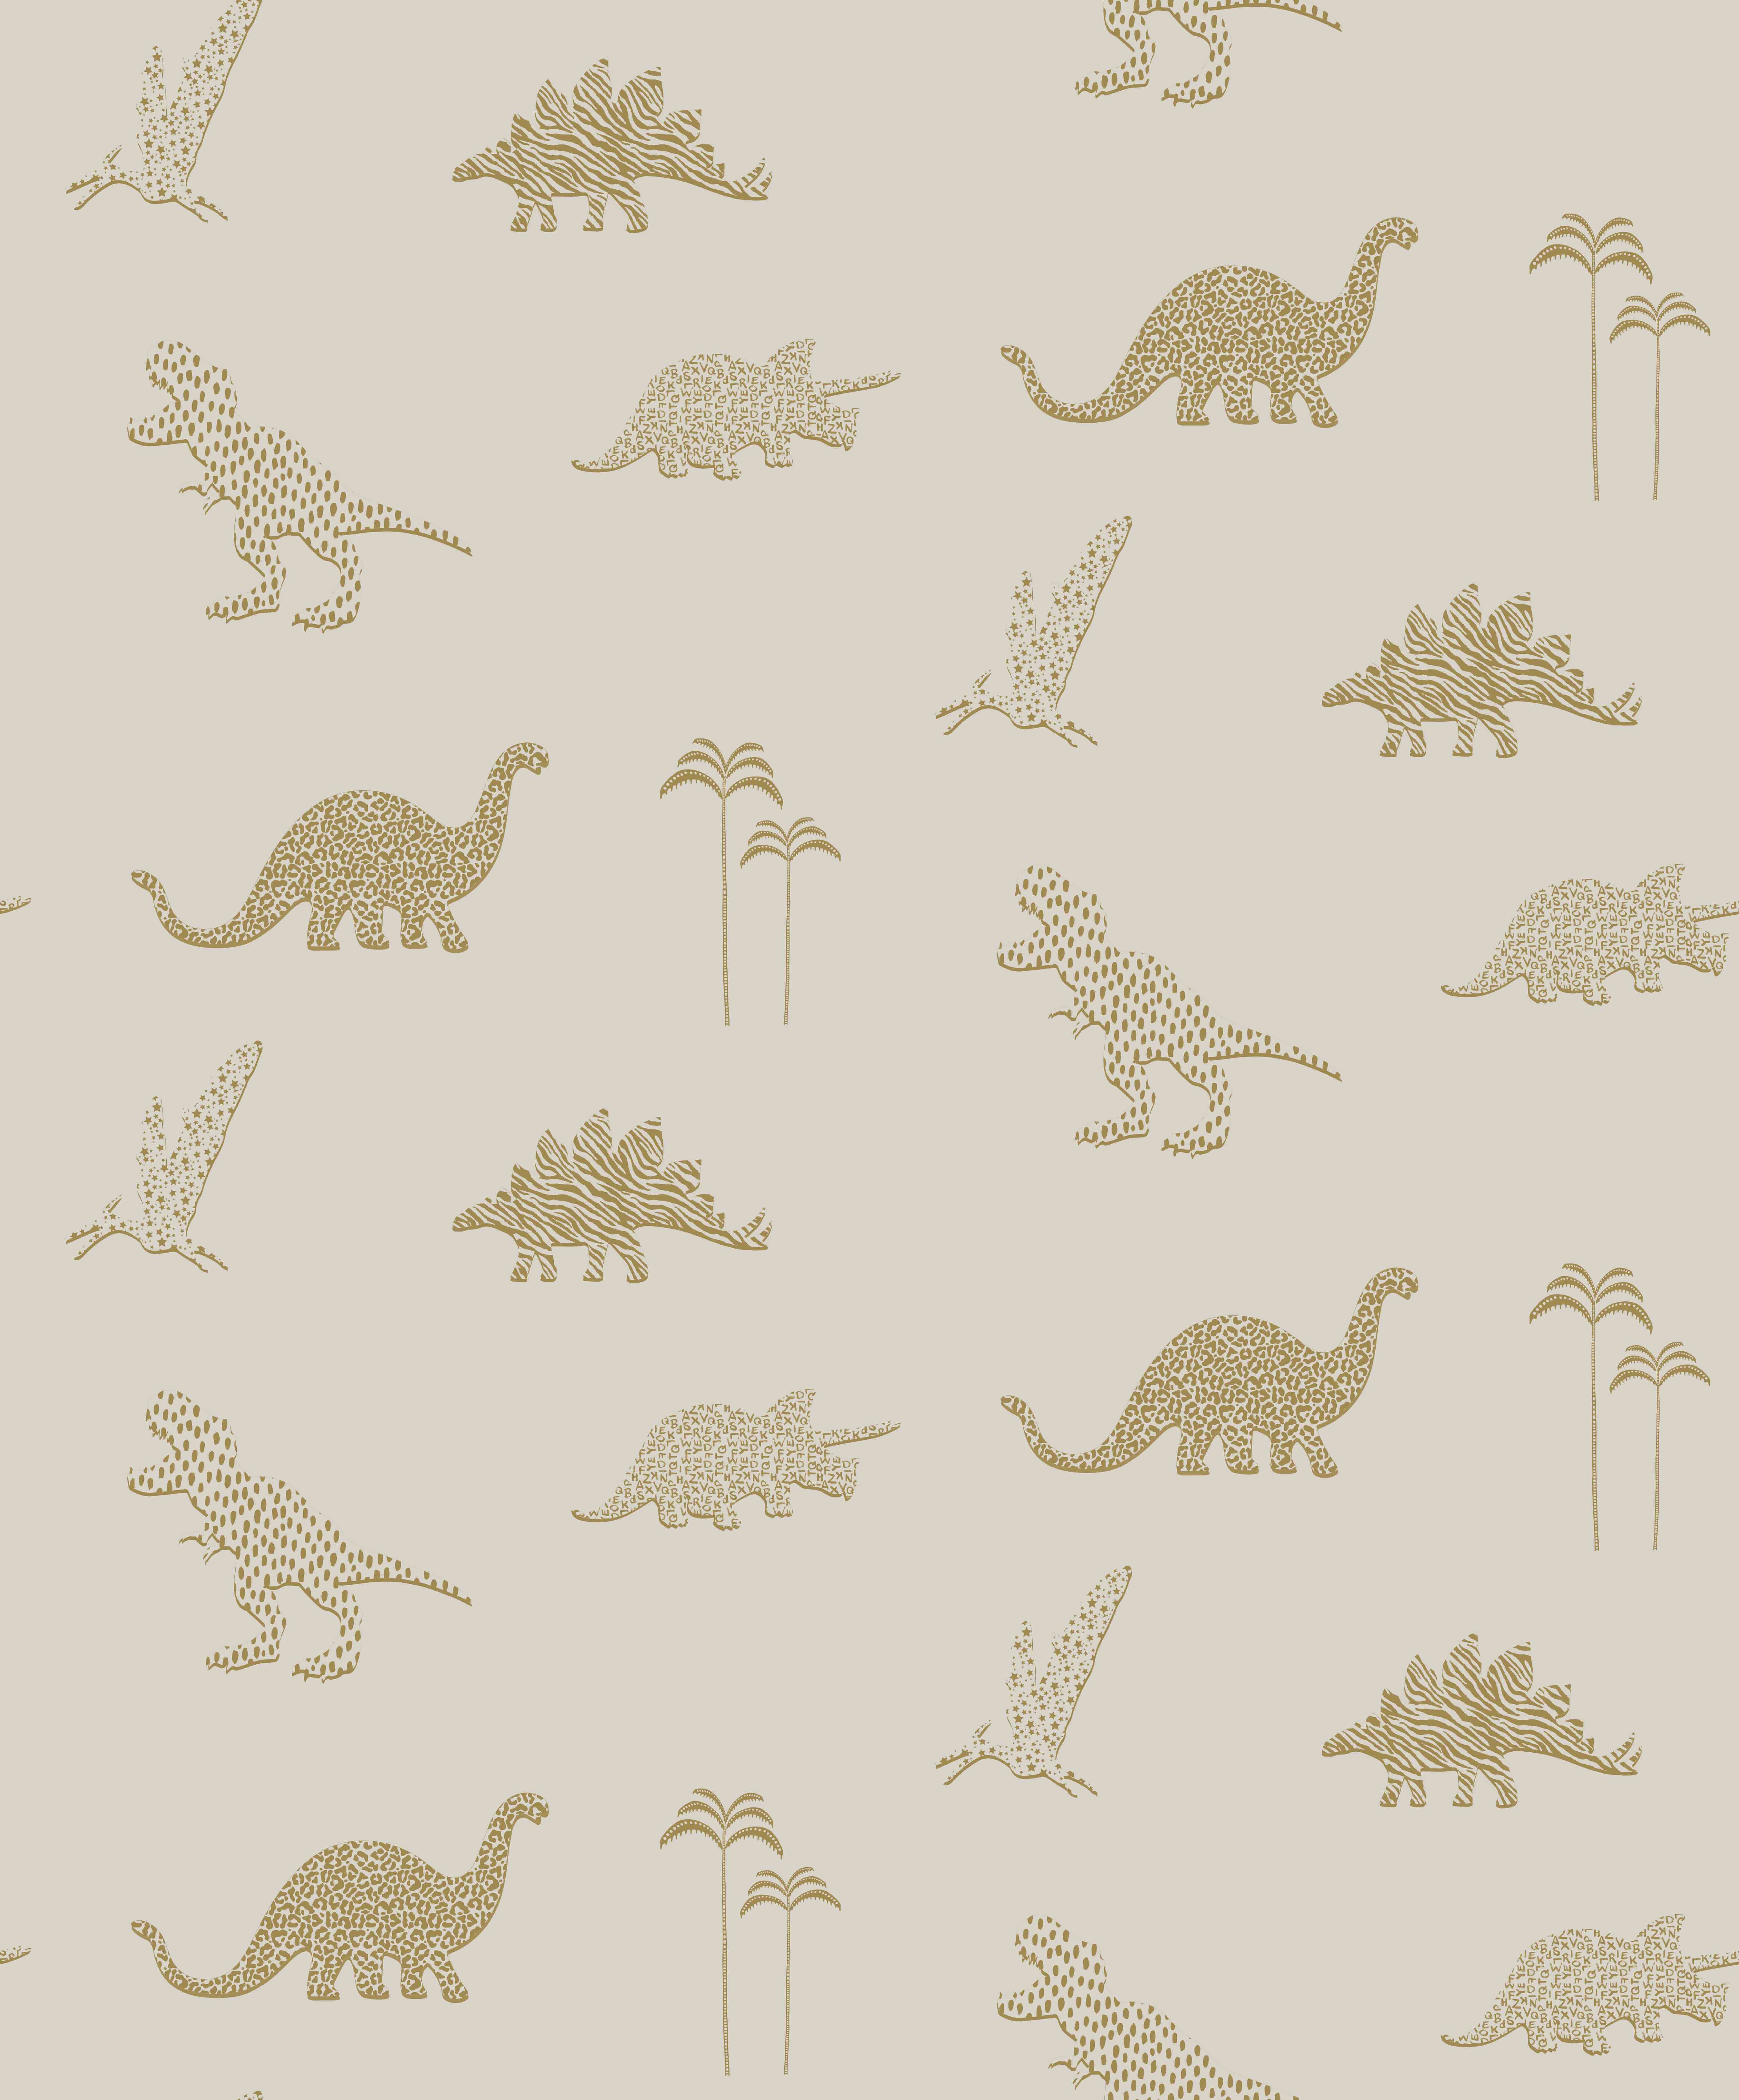 100+] Animal Print Wallpapers